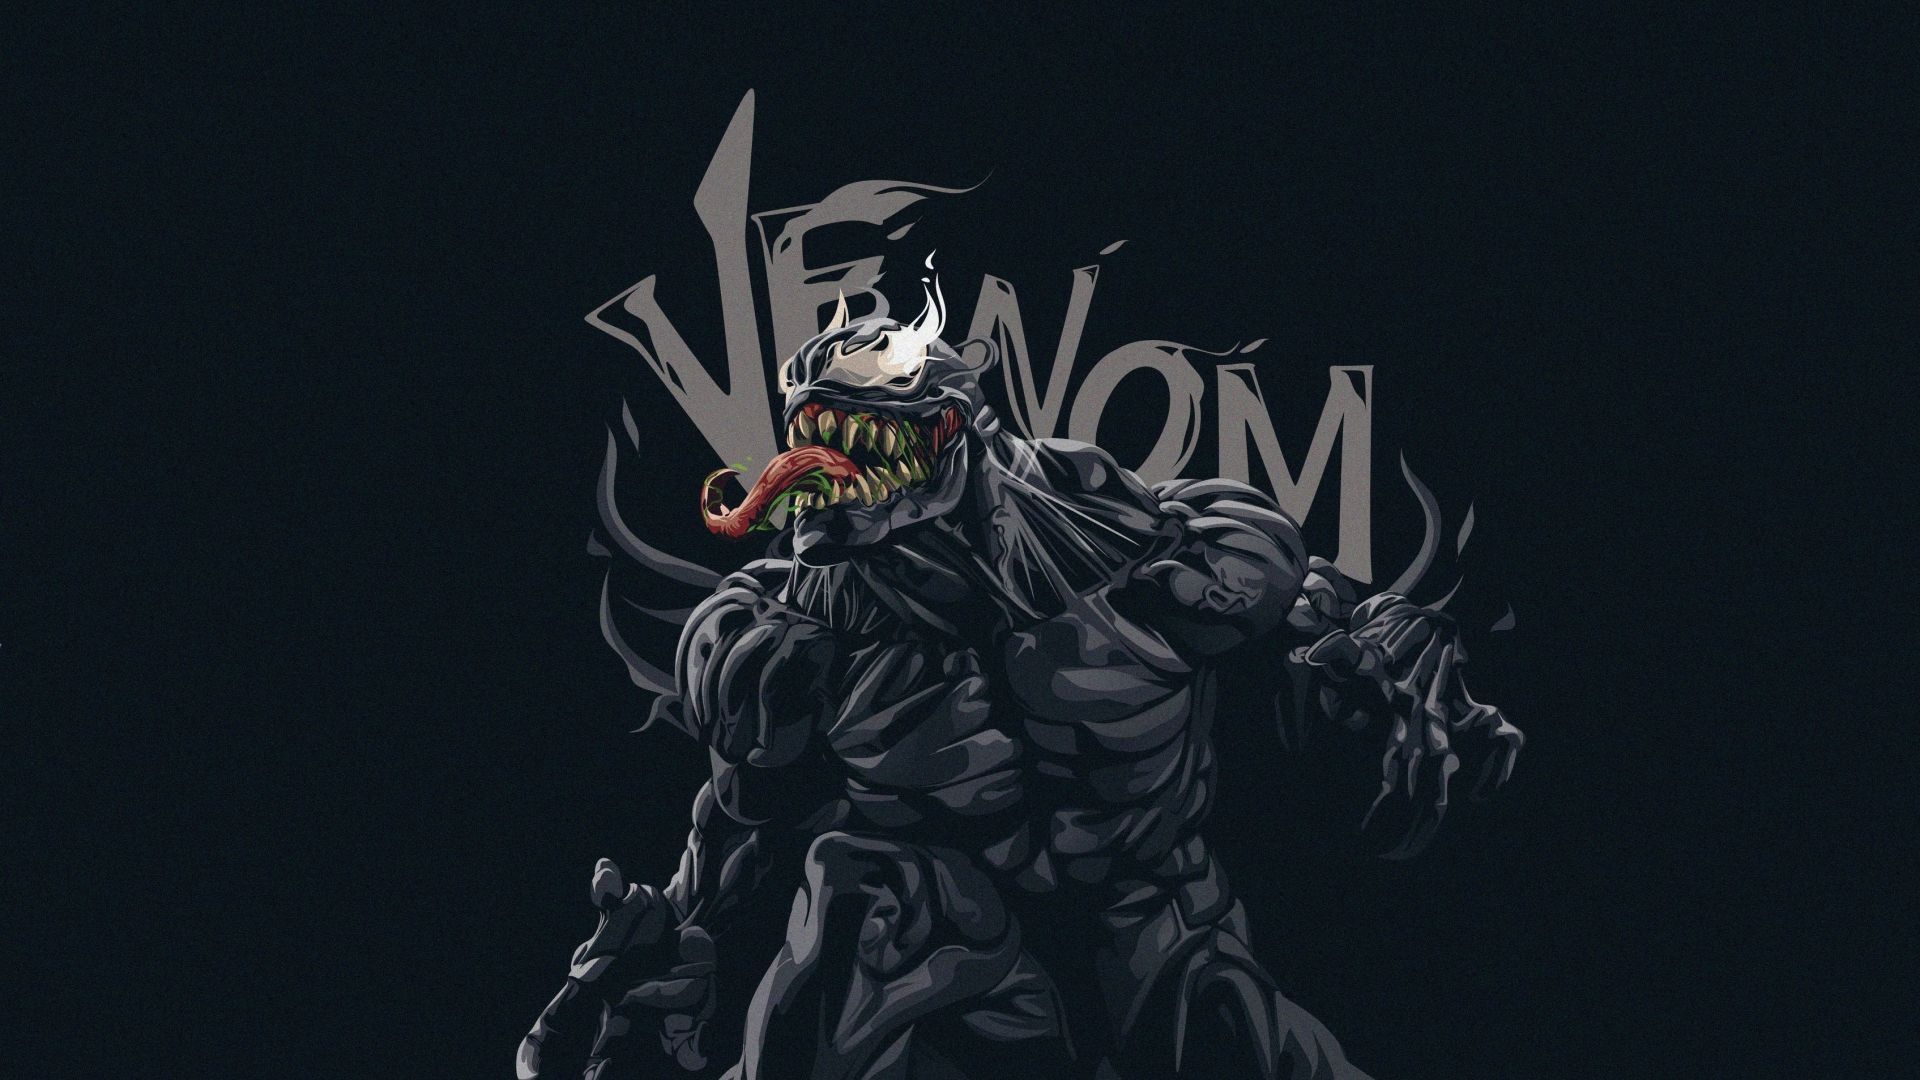 Venom, minimal, dark, art wallpaper, HD image, picture, background, 87d154